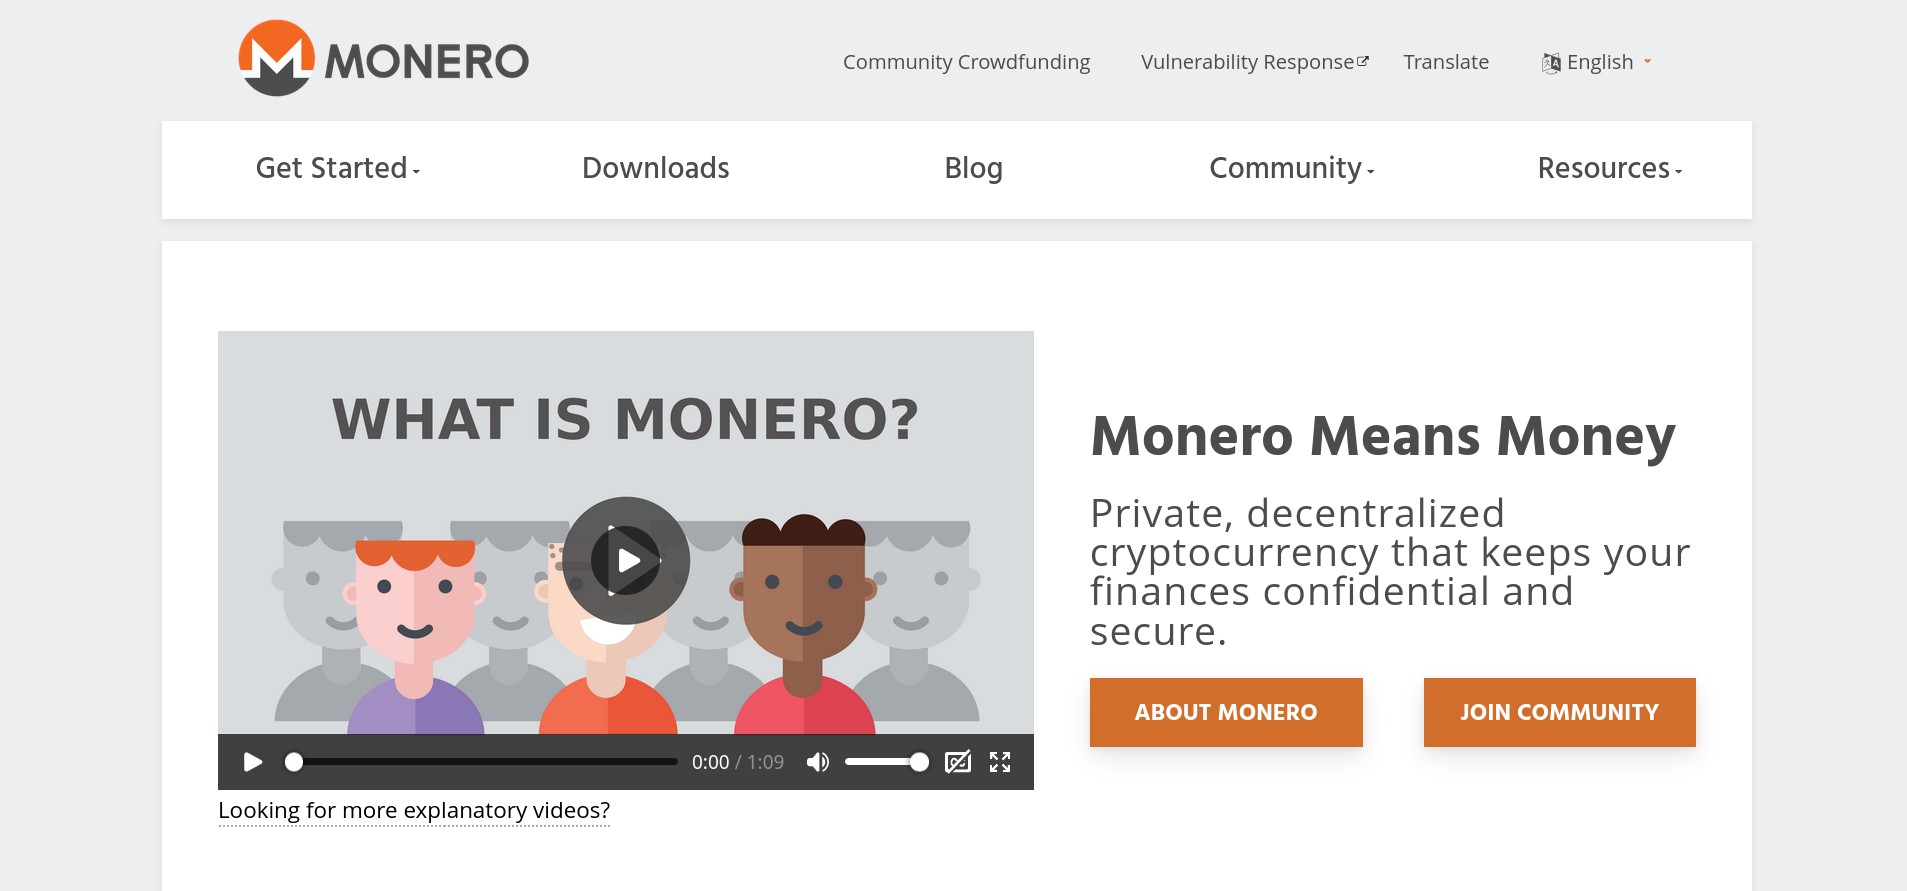 The Monero Project